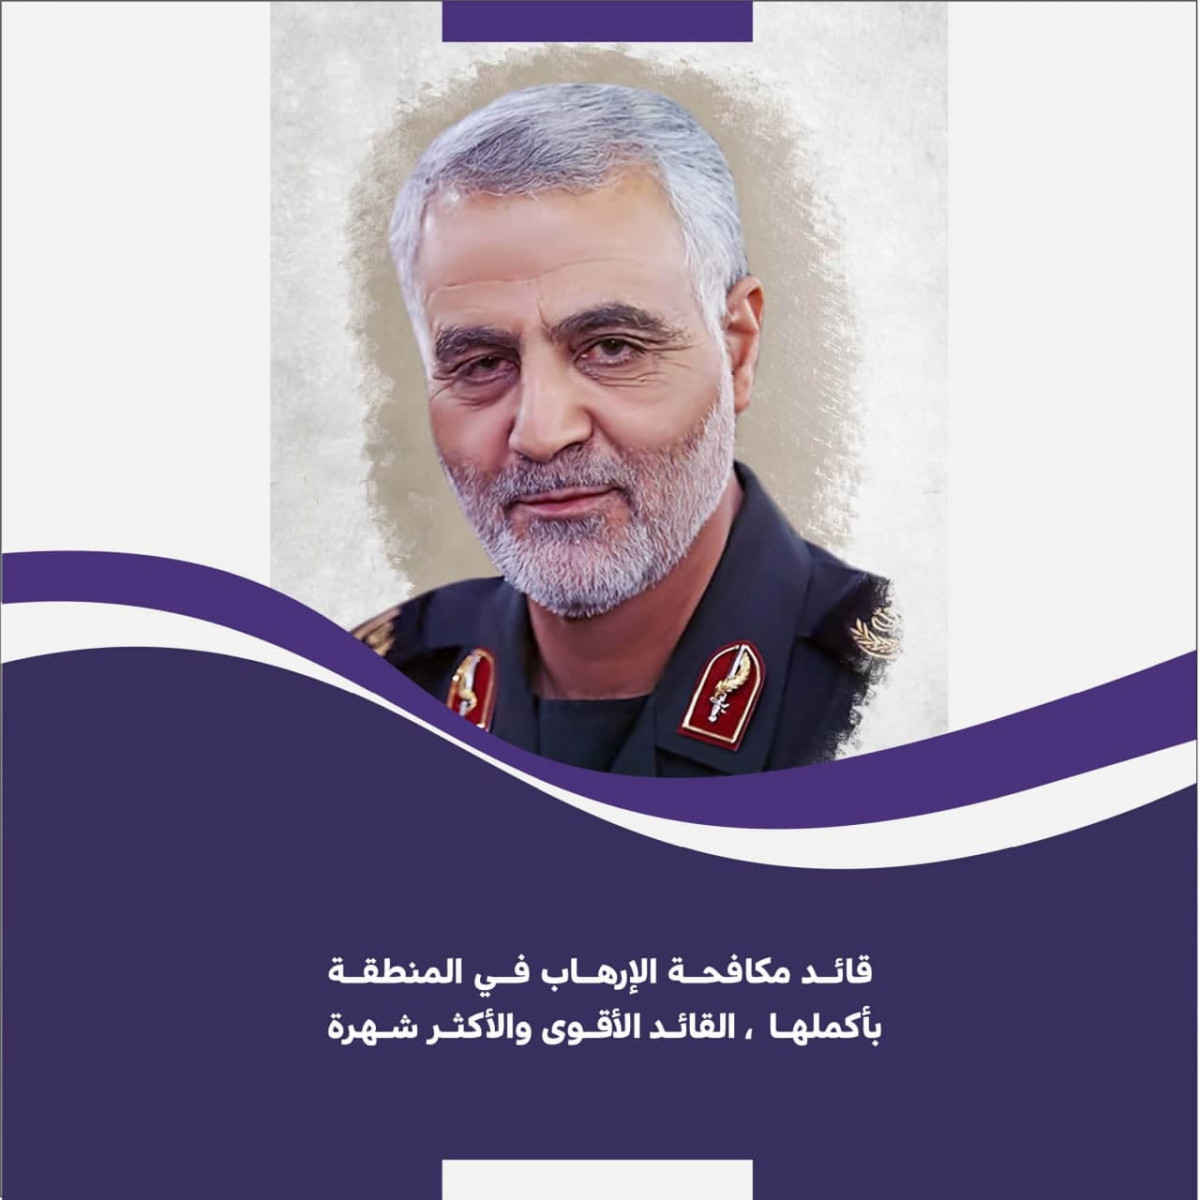 قائد مكافحة الإرهاب في المنطقة بأكملها ،القائد الأقوى والأكثر شهرة